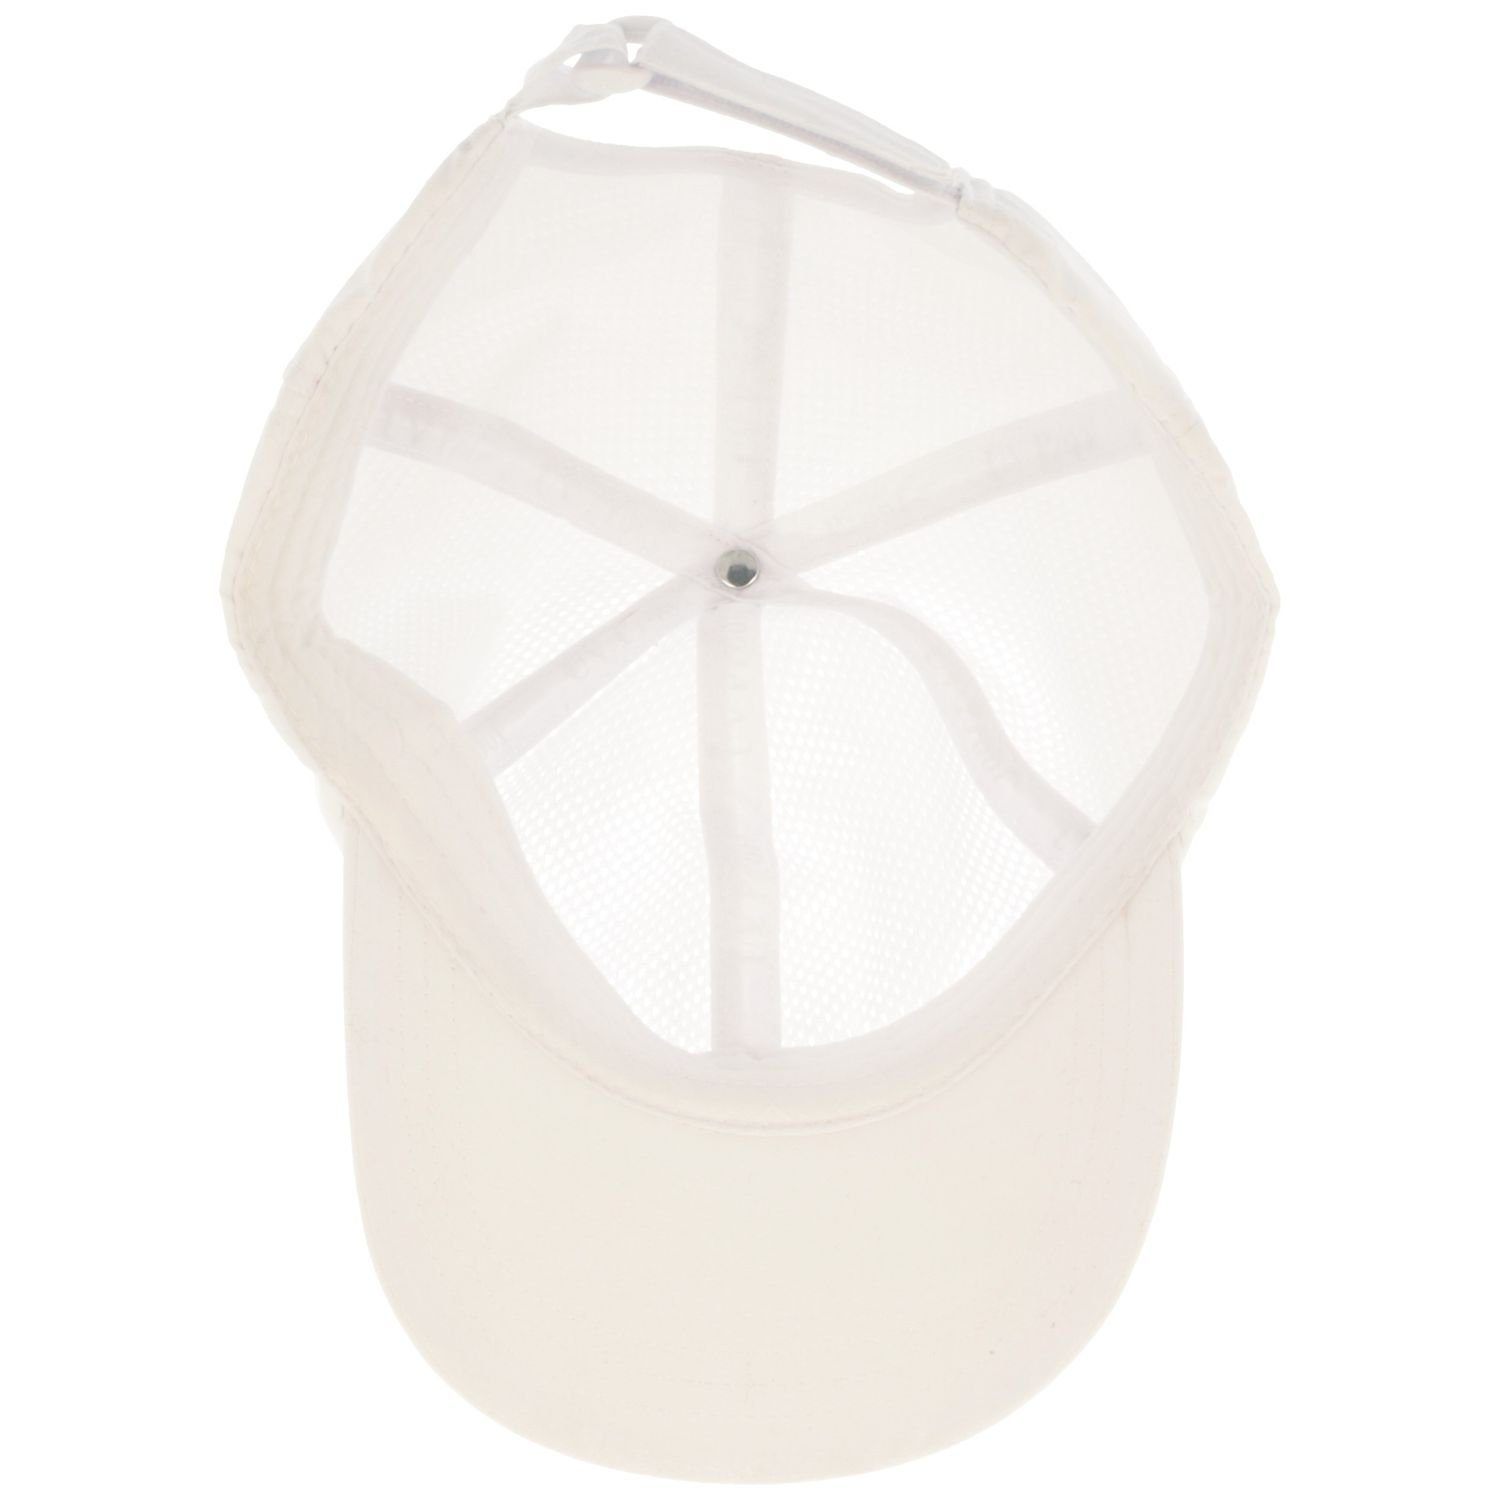 Klettverschluss Balke 40+ Cap 6-teilig mit UV-Schutz 600 Baseball und